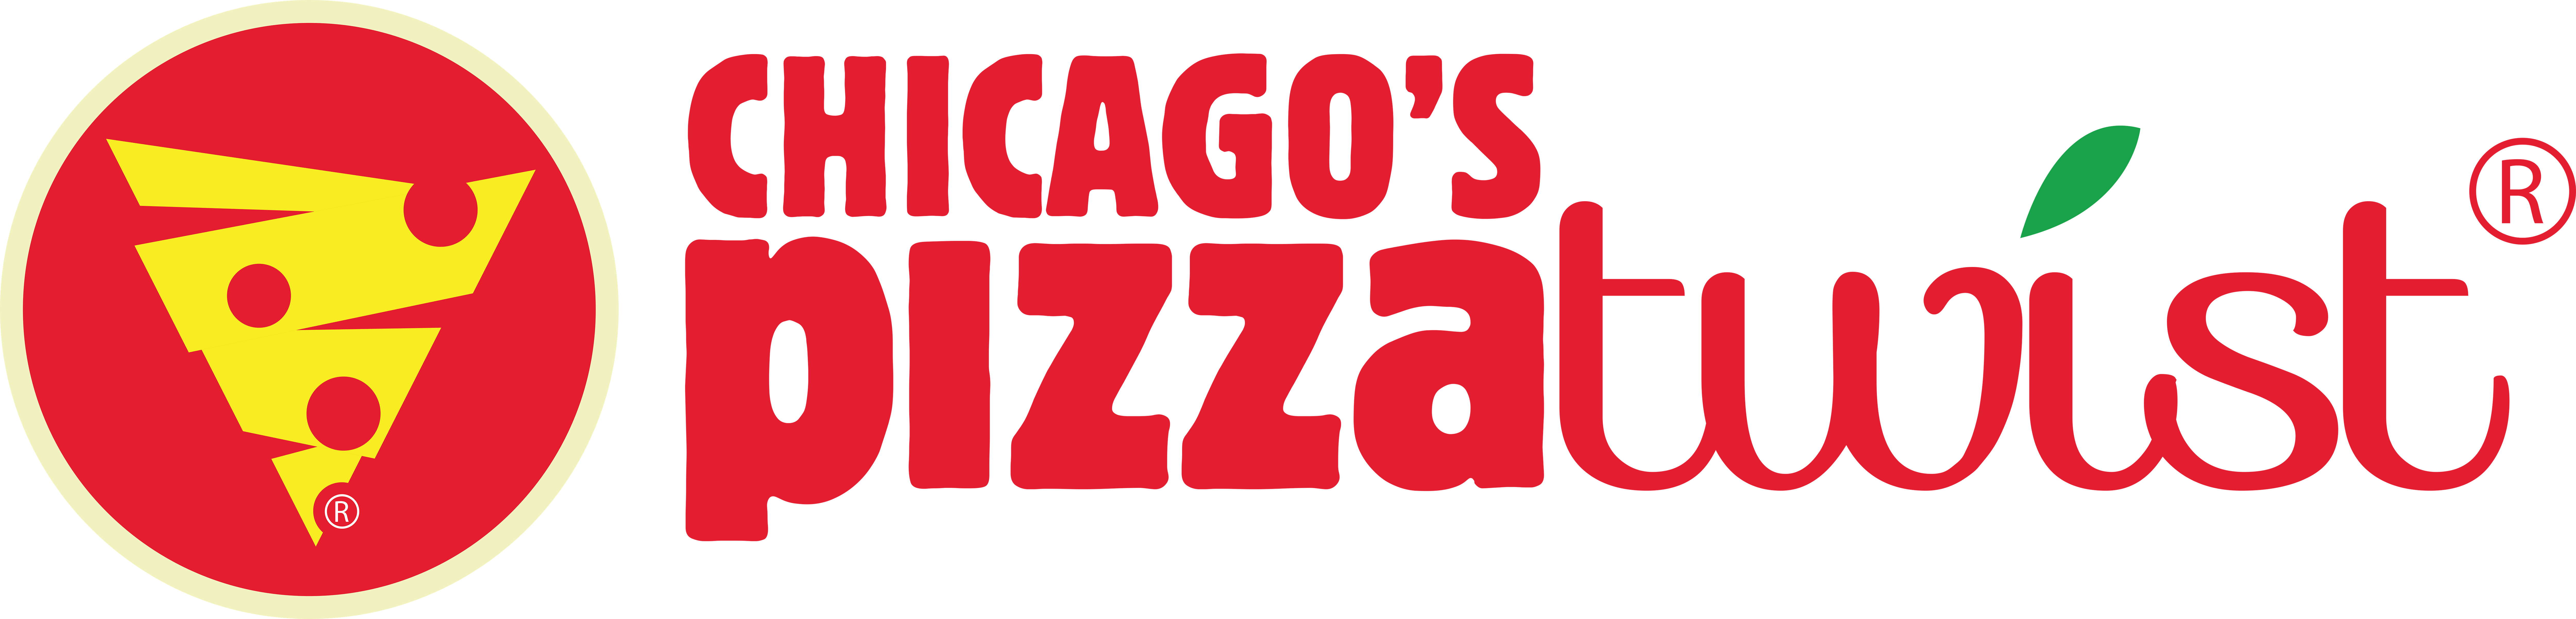 Chicago's Pizza Twist